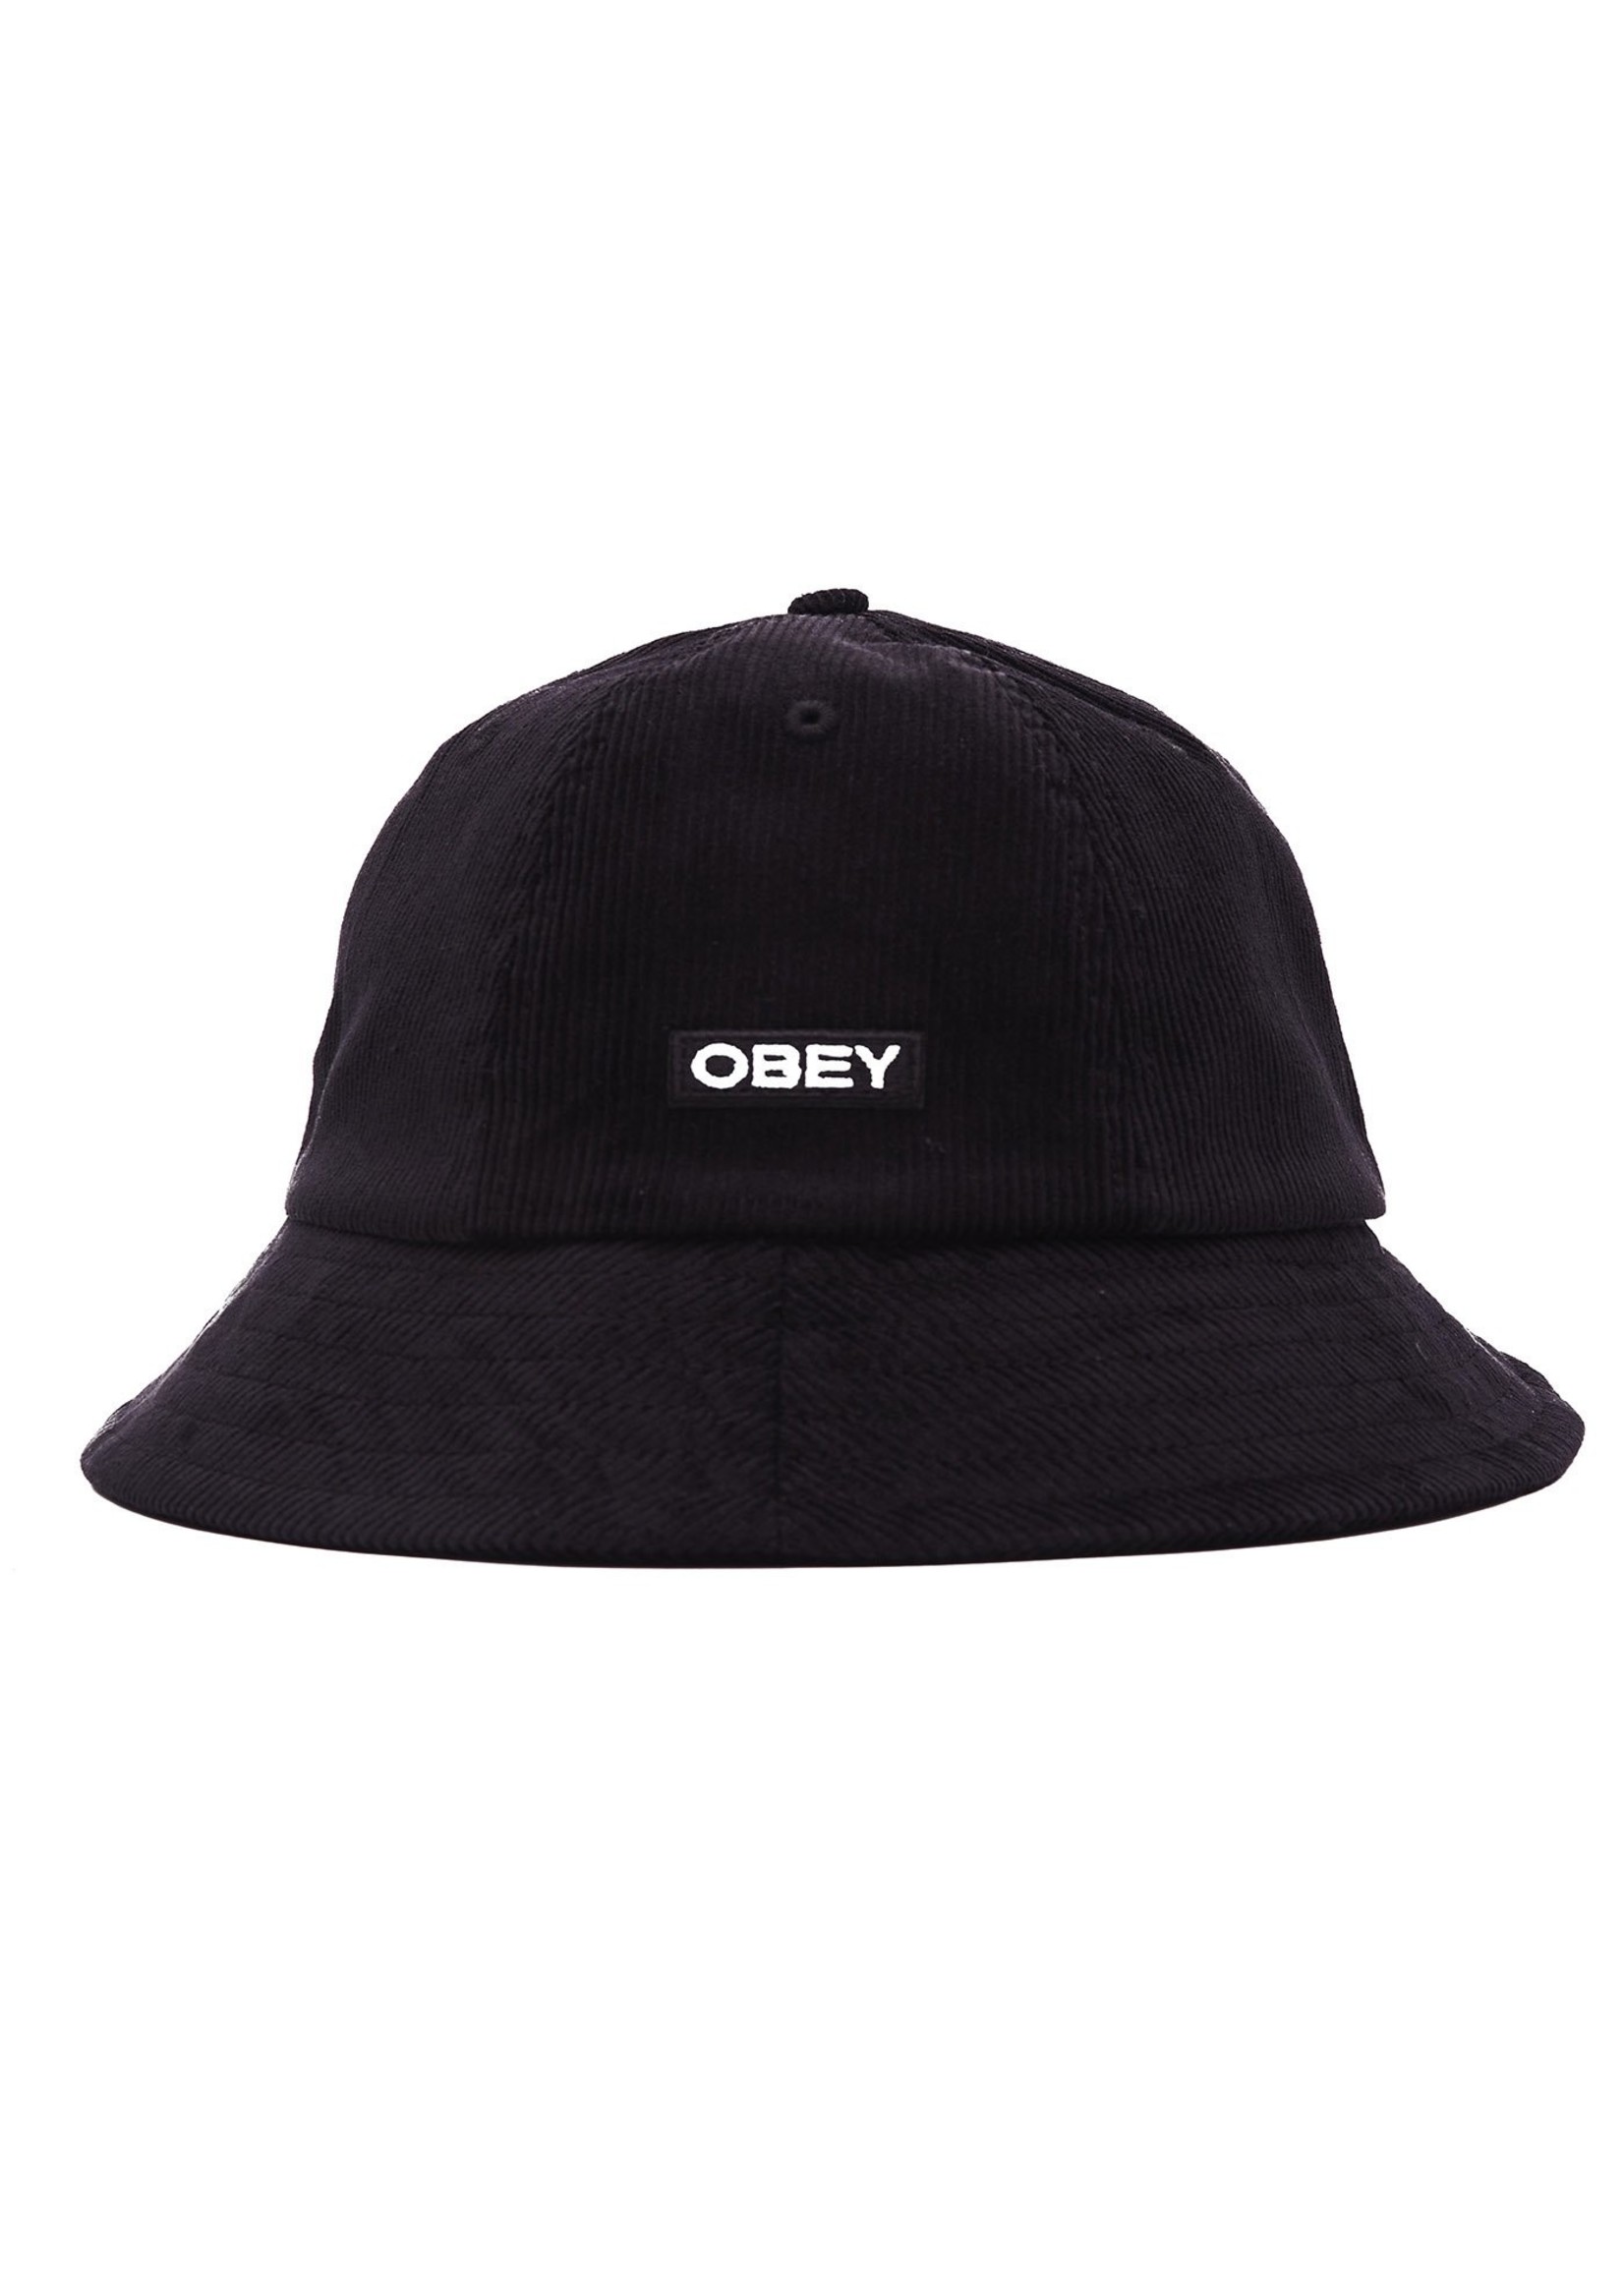 Obey Obey - Franklin Bucket Hat